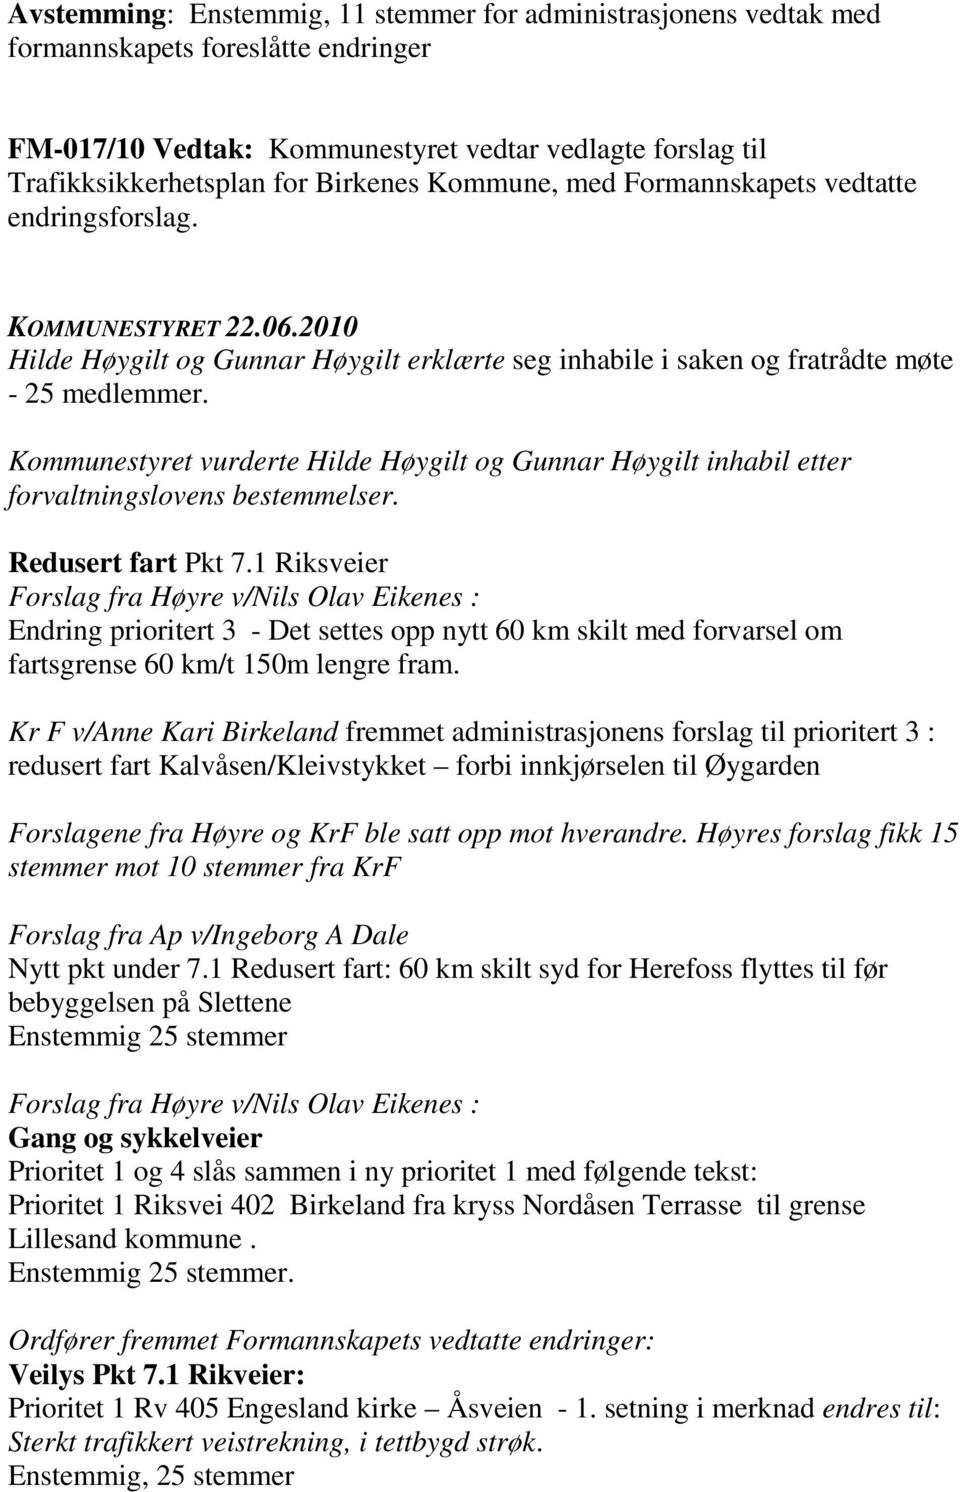 Kommunestyret vurderte Hilde Høygilt og Gunnar Høygilt inhabil etter forvaltningslovens bestemmelser. Redusert fart Pkt 7.